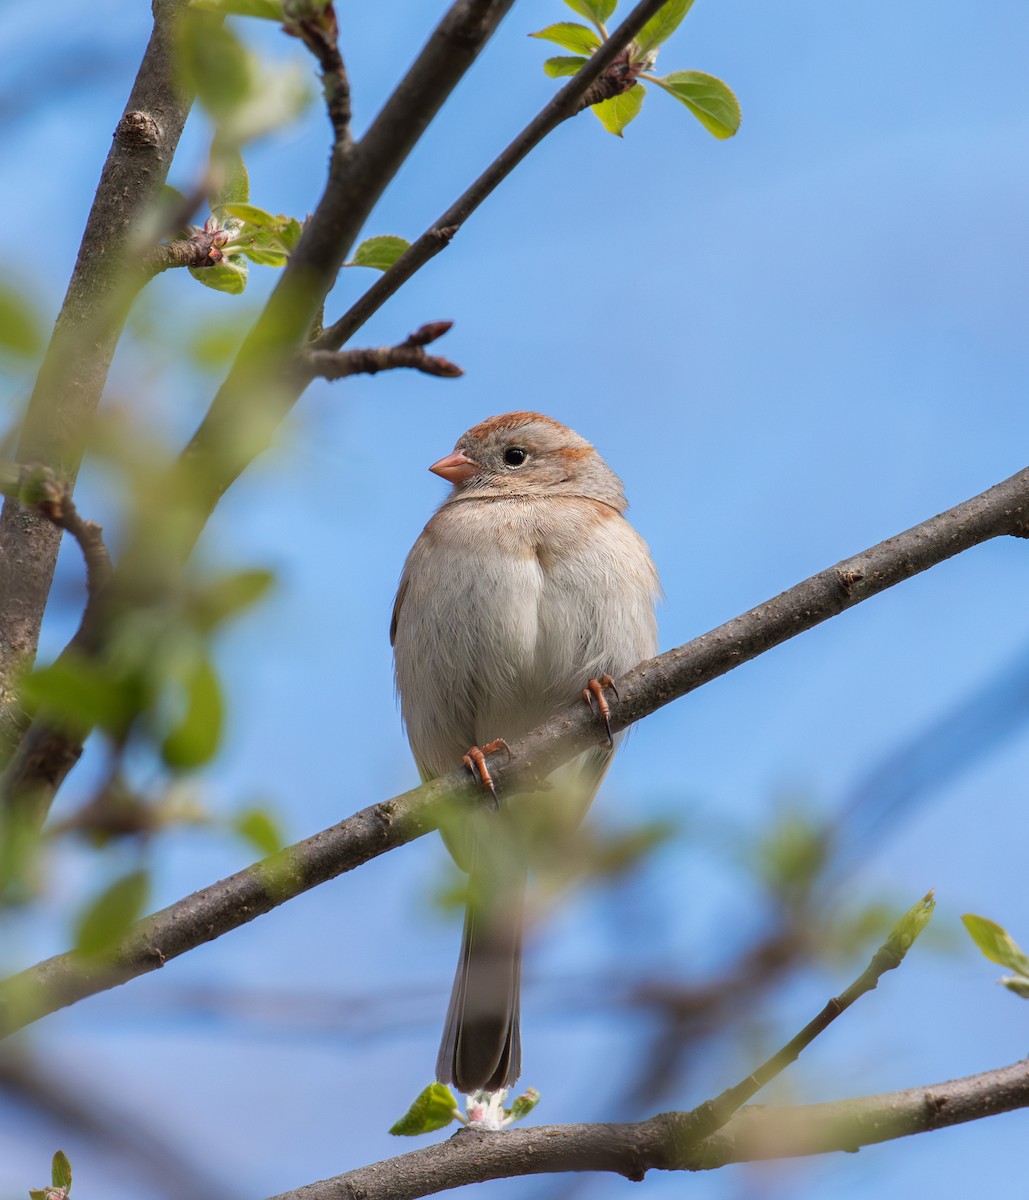 Field Sparrow - Alton Spencer